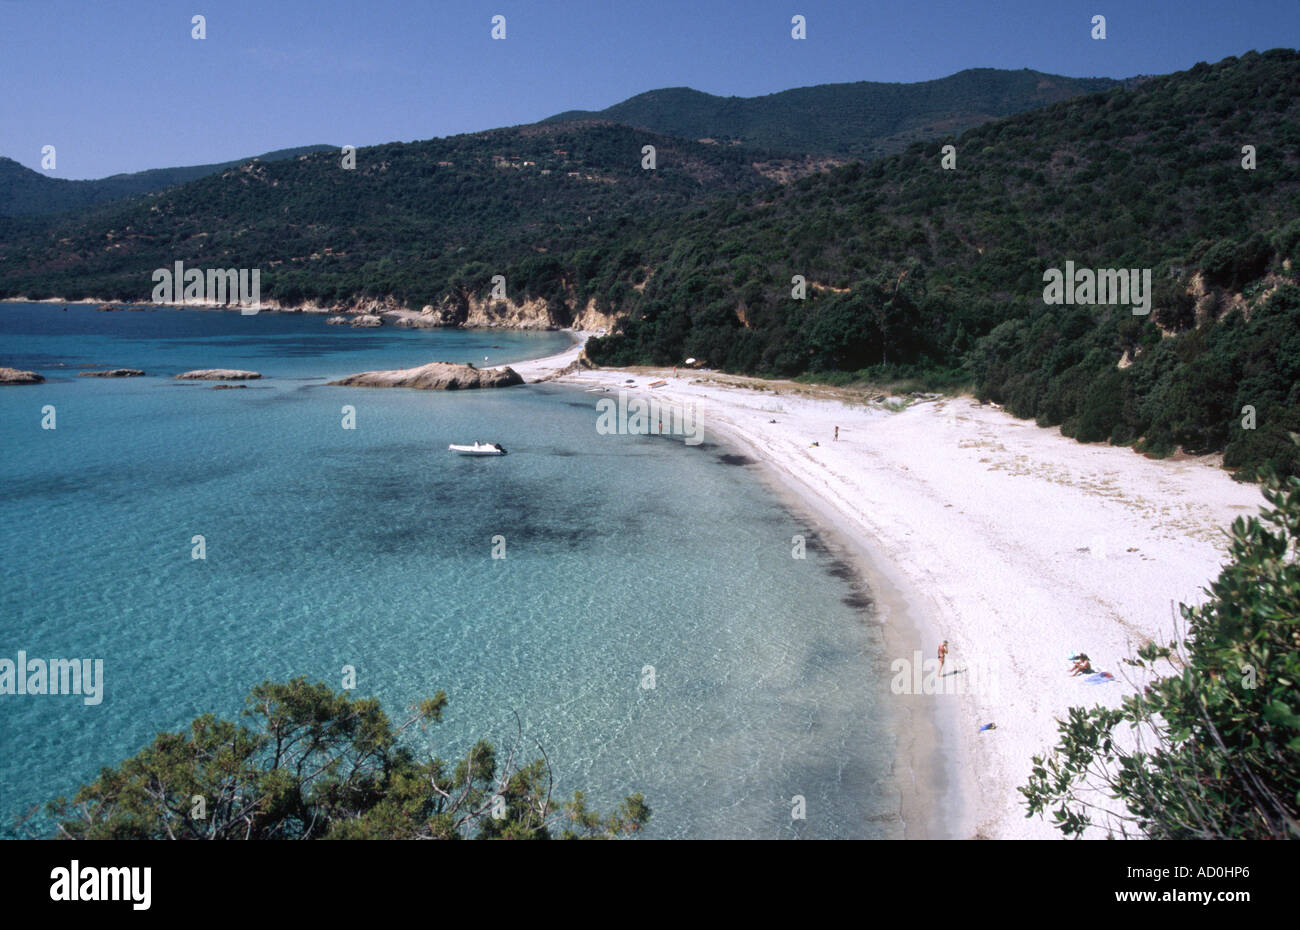 Golfe de Valinco - Corsica, FRANCE Stock Photo